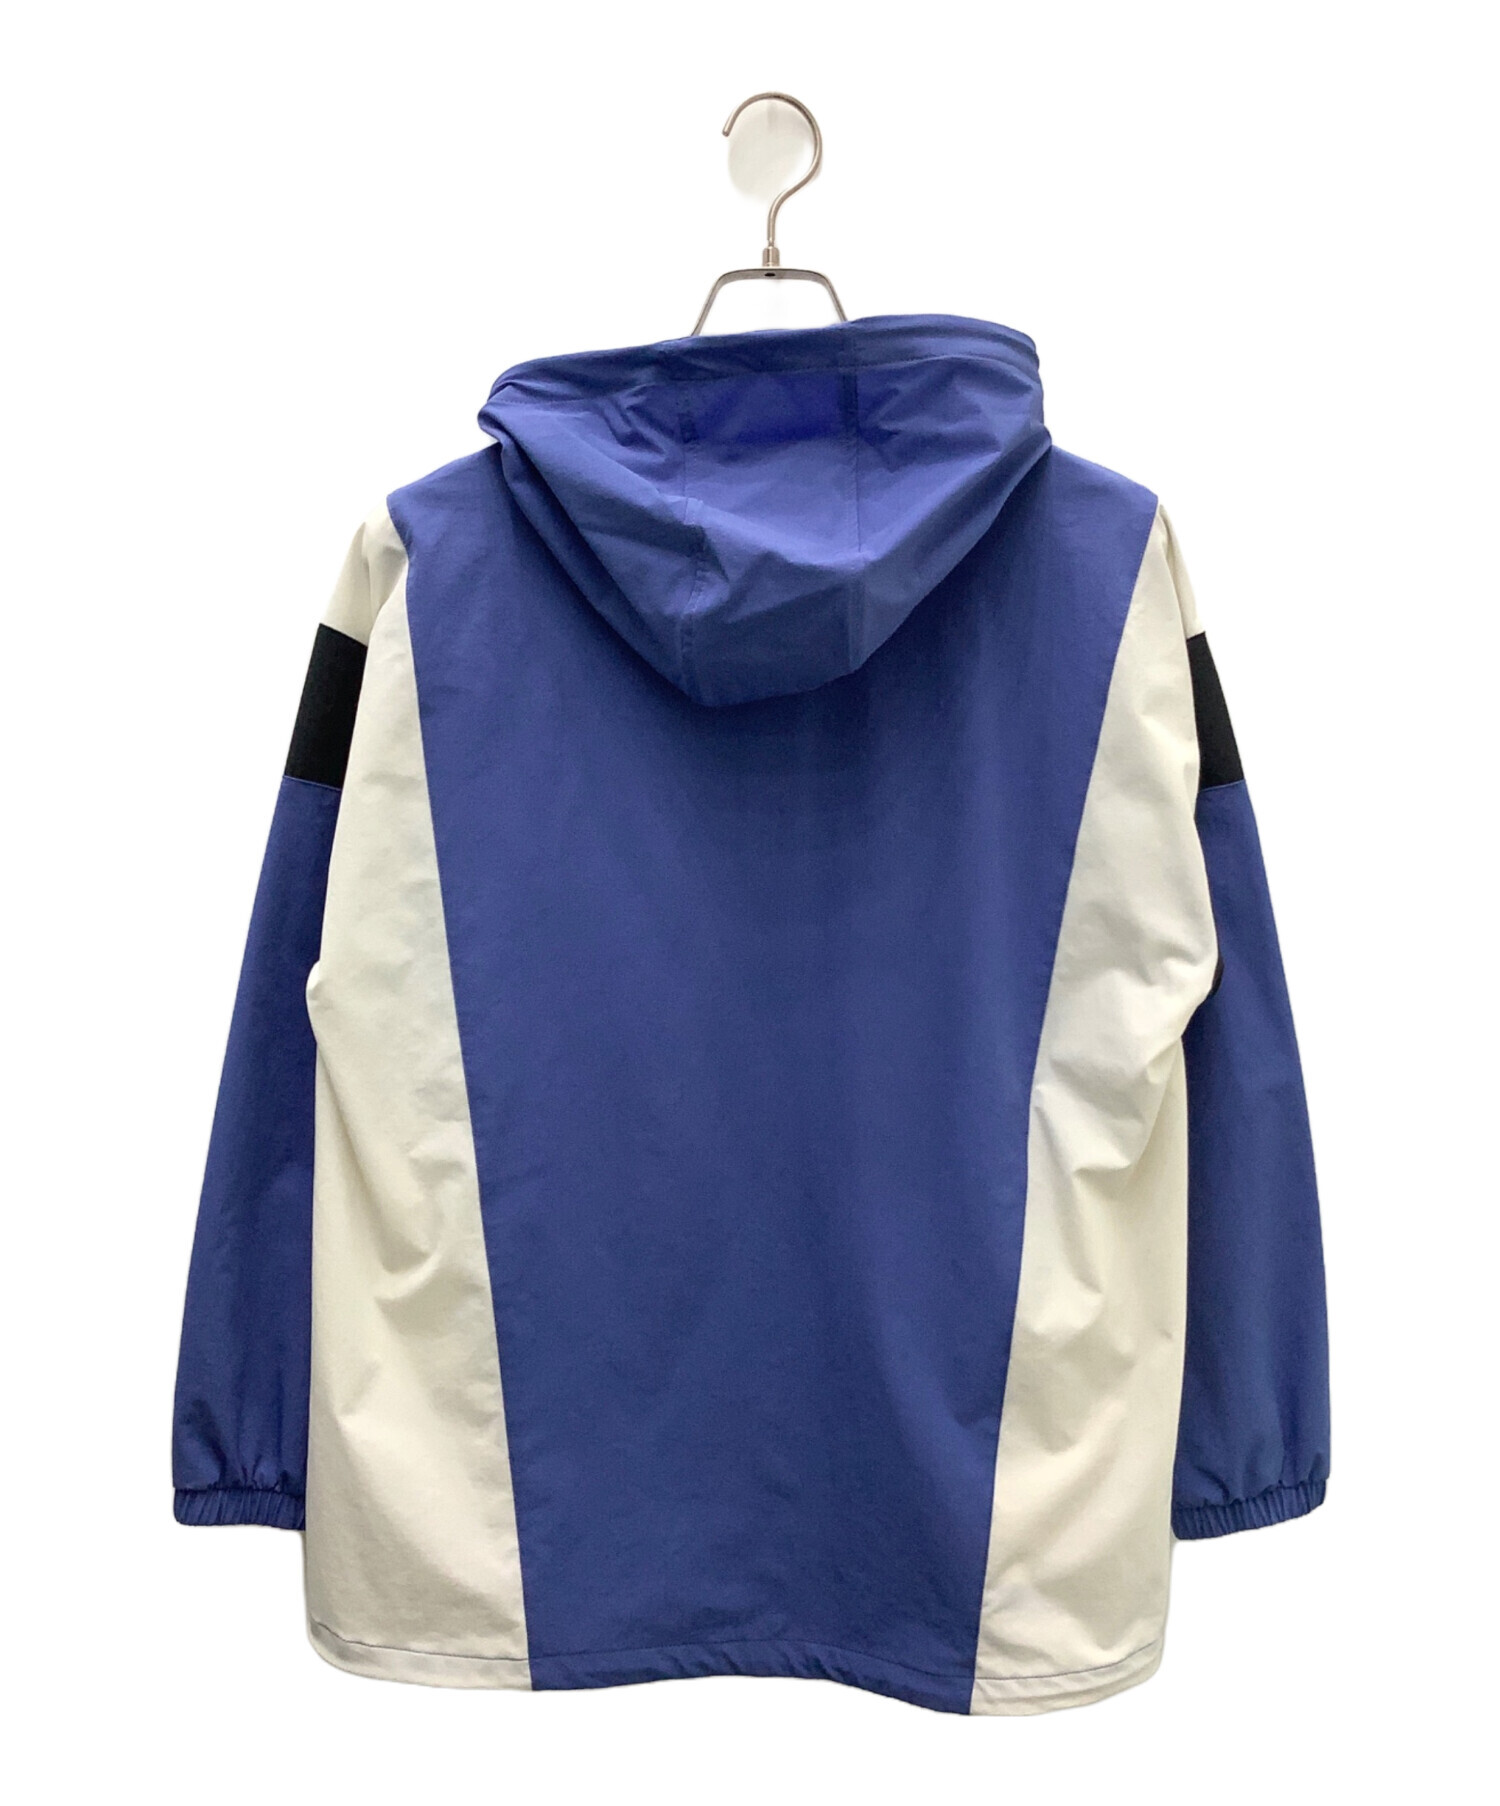 Champion (チャンピオン) ジップフーデッドジャケット ブルー×ホワイト サイズ:L 未使用品